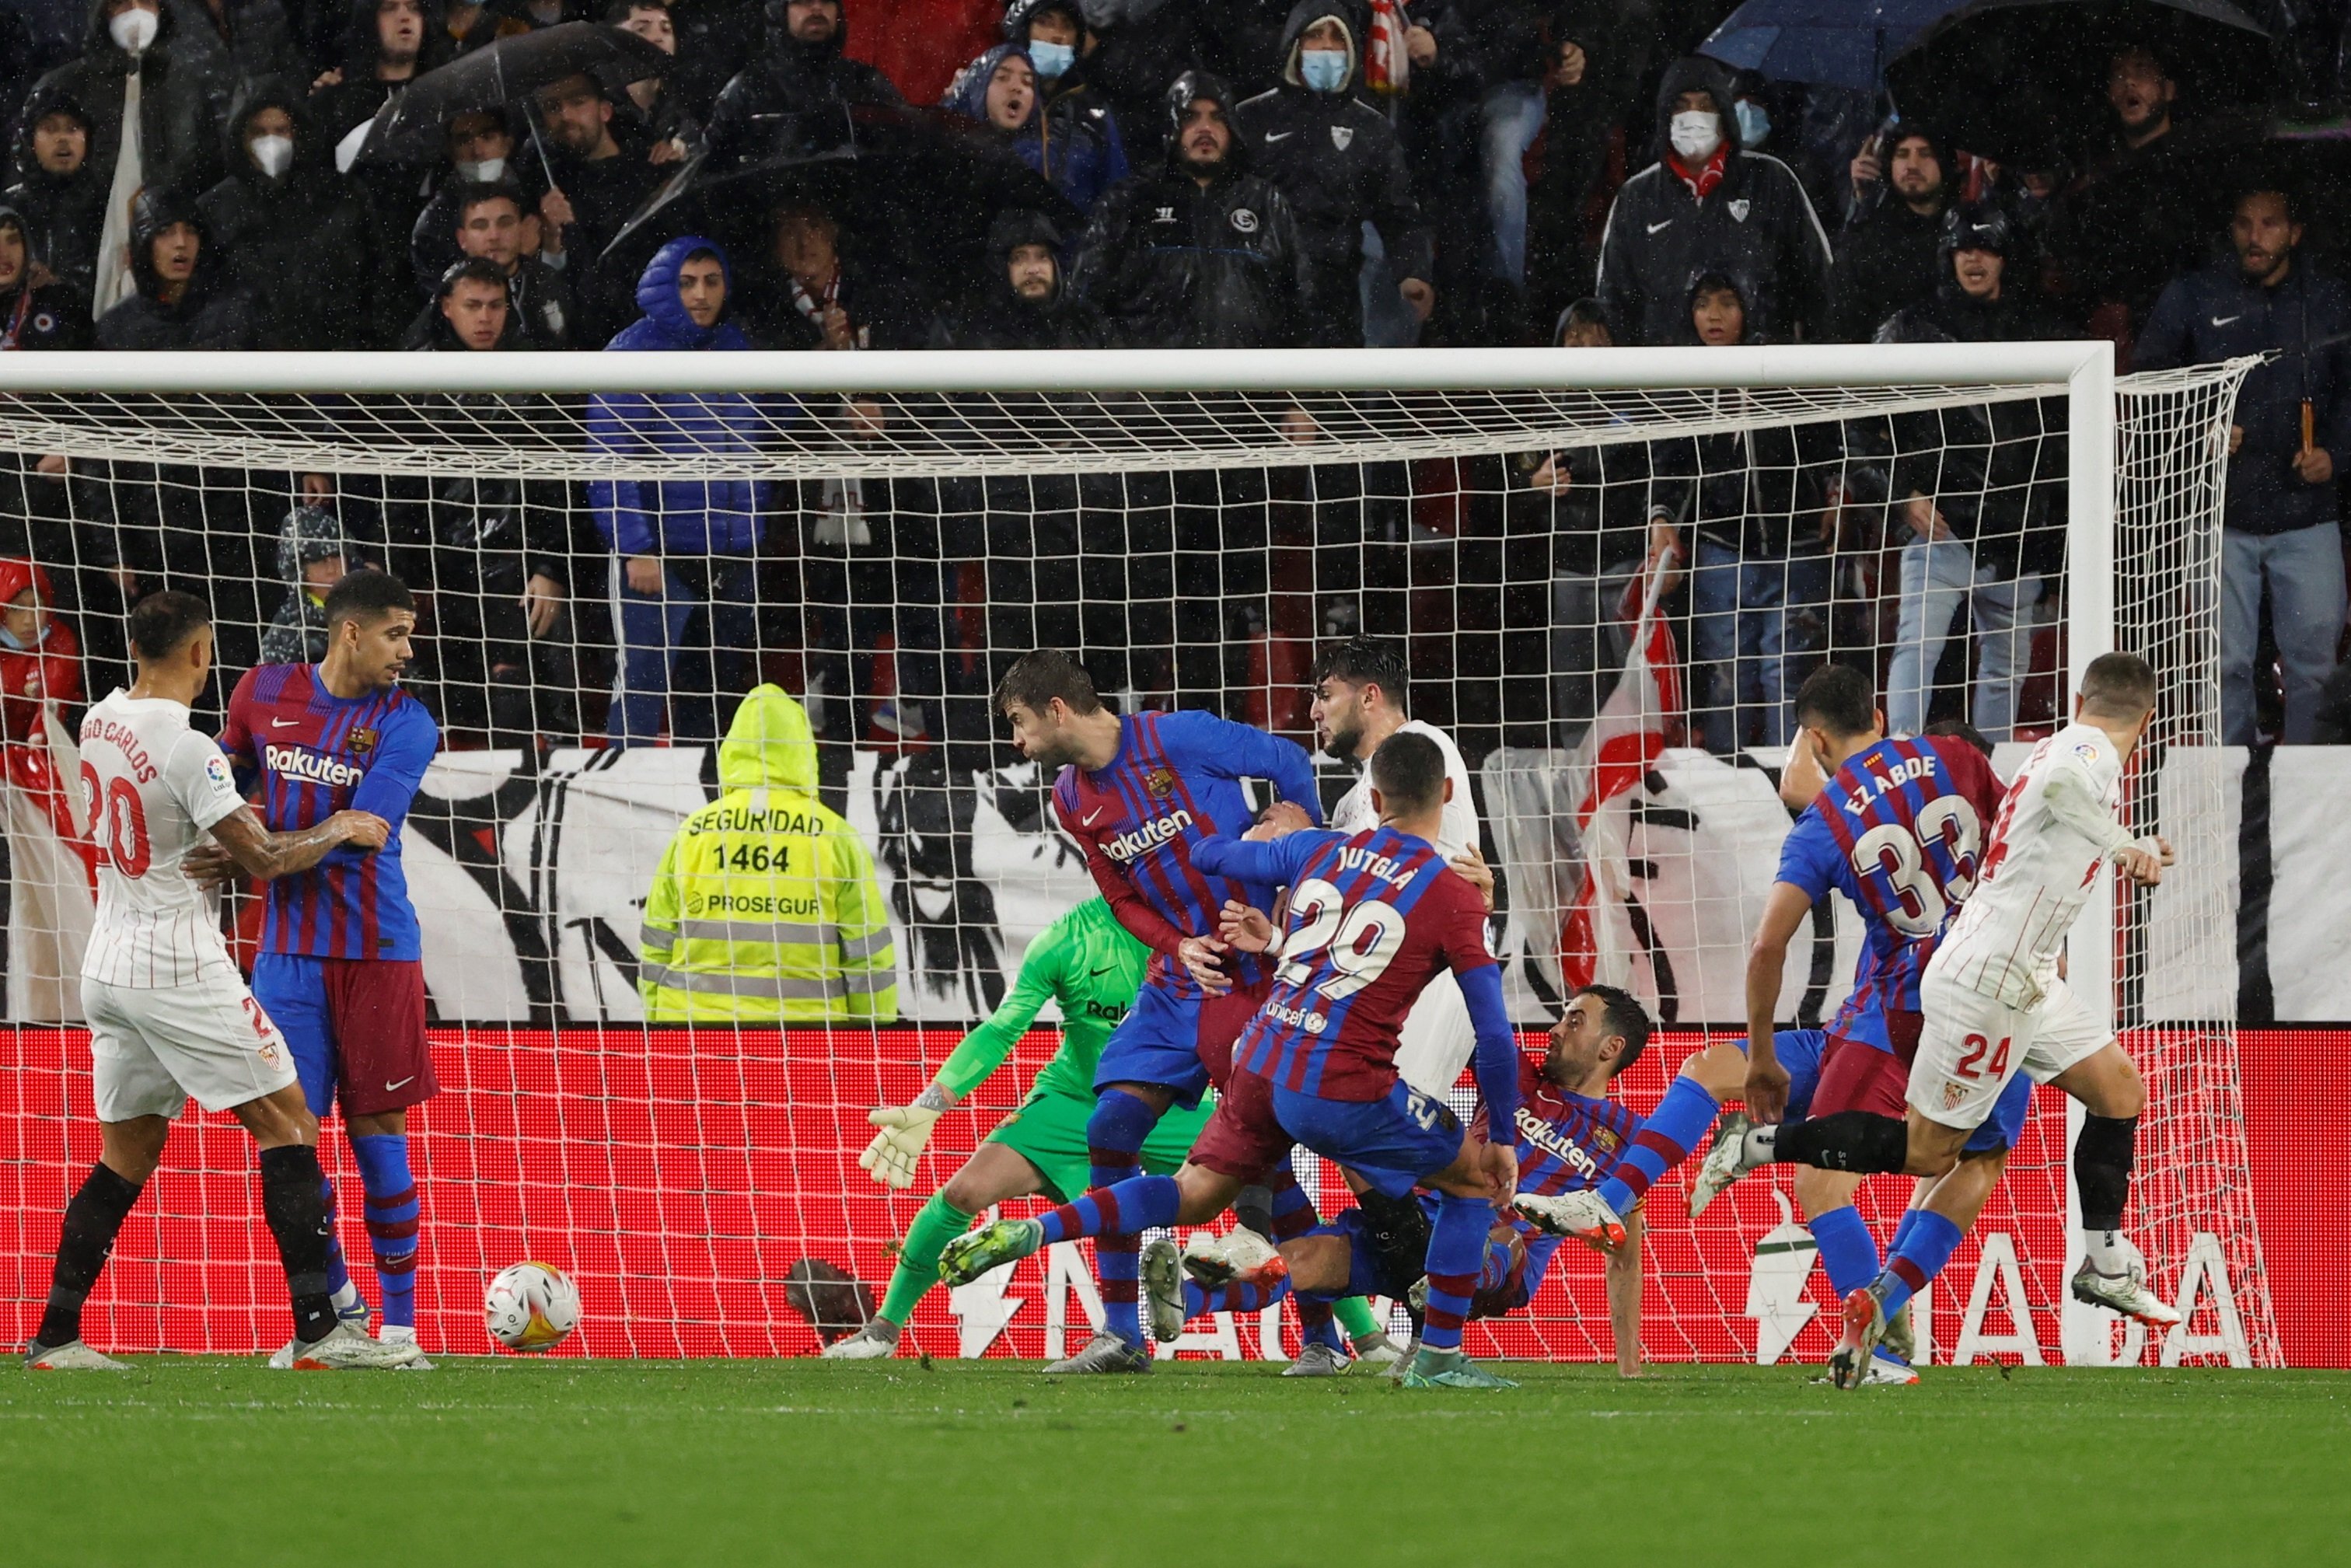 L'1x1 del Sevilla-Barça: Gavi sobresurt, però dos jugadors suspenen